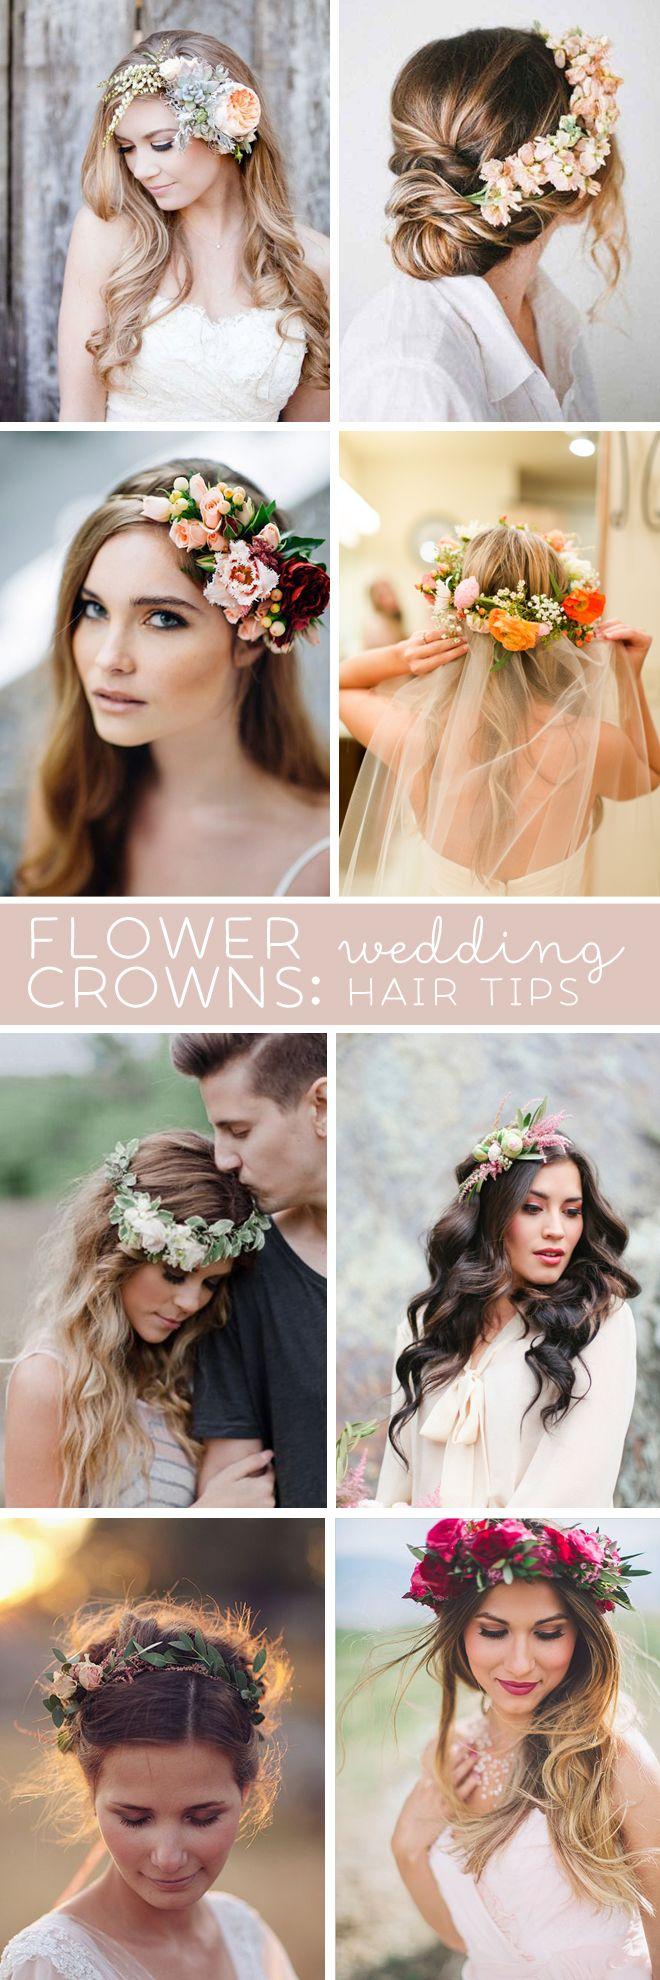 زفاف - Awesome Wedding Hair Tips For Wearing Flower Crowns!